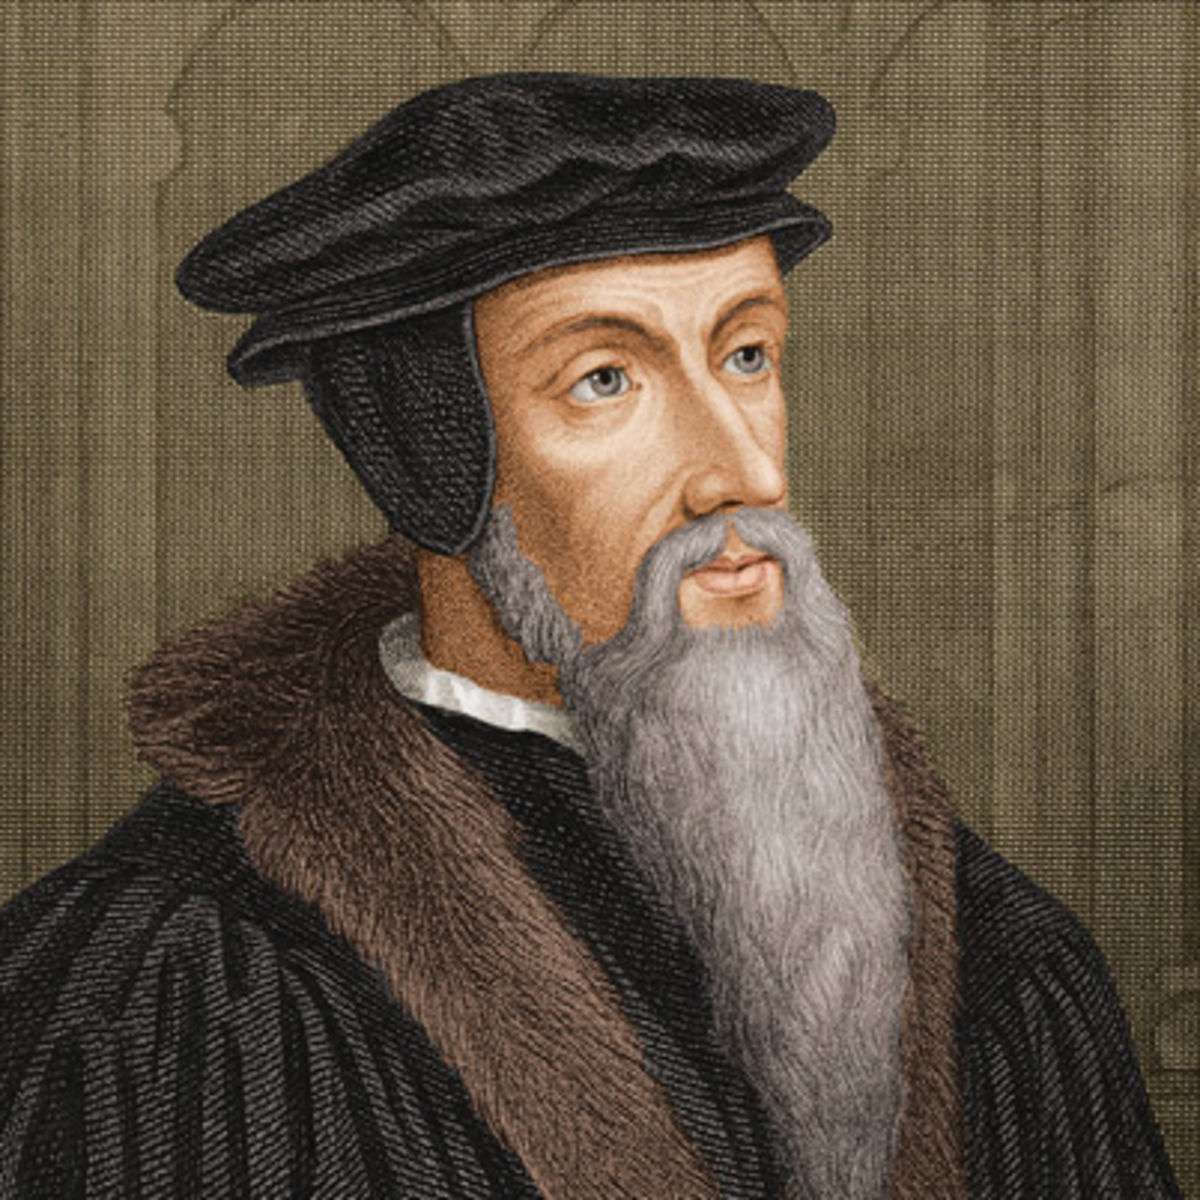 Ο Ιωάννης Καλβίνος, γαλ. Jean Calvin, πραγματικό όνομα Jehan Cauvin, (10 Ιουλίου 1509 - 27 Μαΐου 1564) γεννήθηκε στο Νουαγιόν της Πικαρδίας στη Γαλλία. 